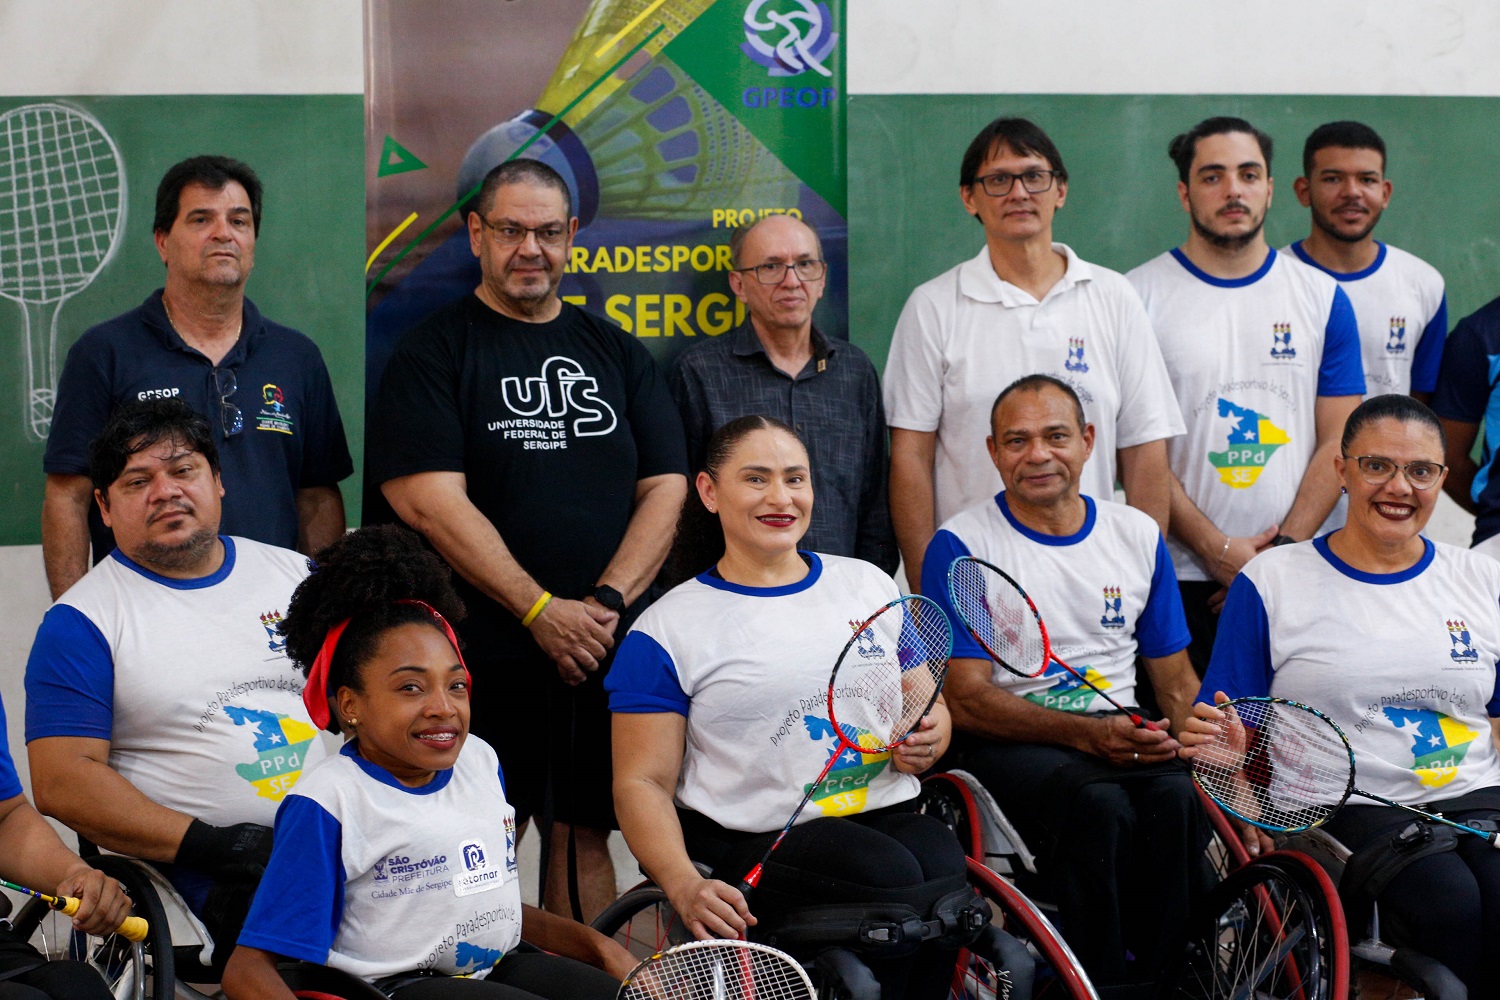 Convocação do foi feita pelo Comitê Paralímpico Brasileiro. (Foto: Matheus Martins/Ascom UFS)